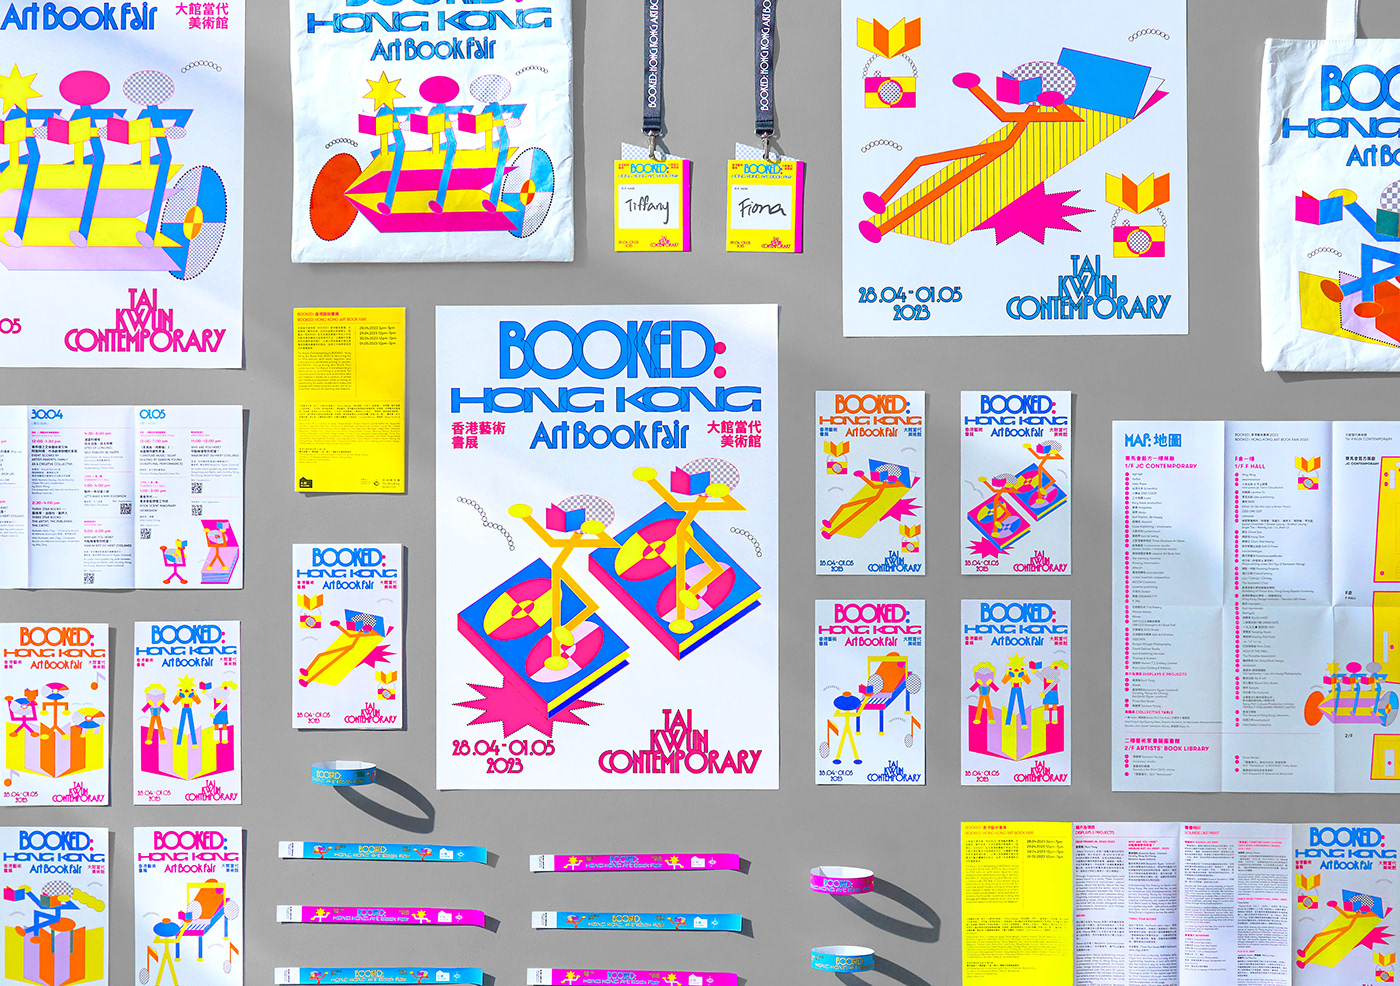 Bookfair visual brand identity graphic design  AU CHON HIN Hong Kong macau Art Book Fair macaodesign untitledmacao